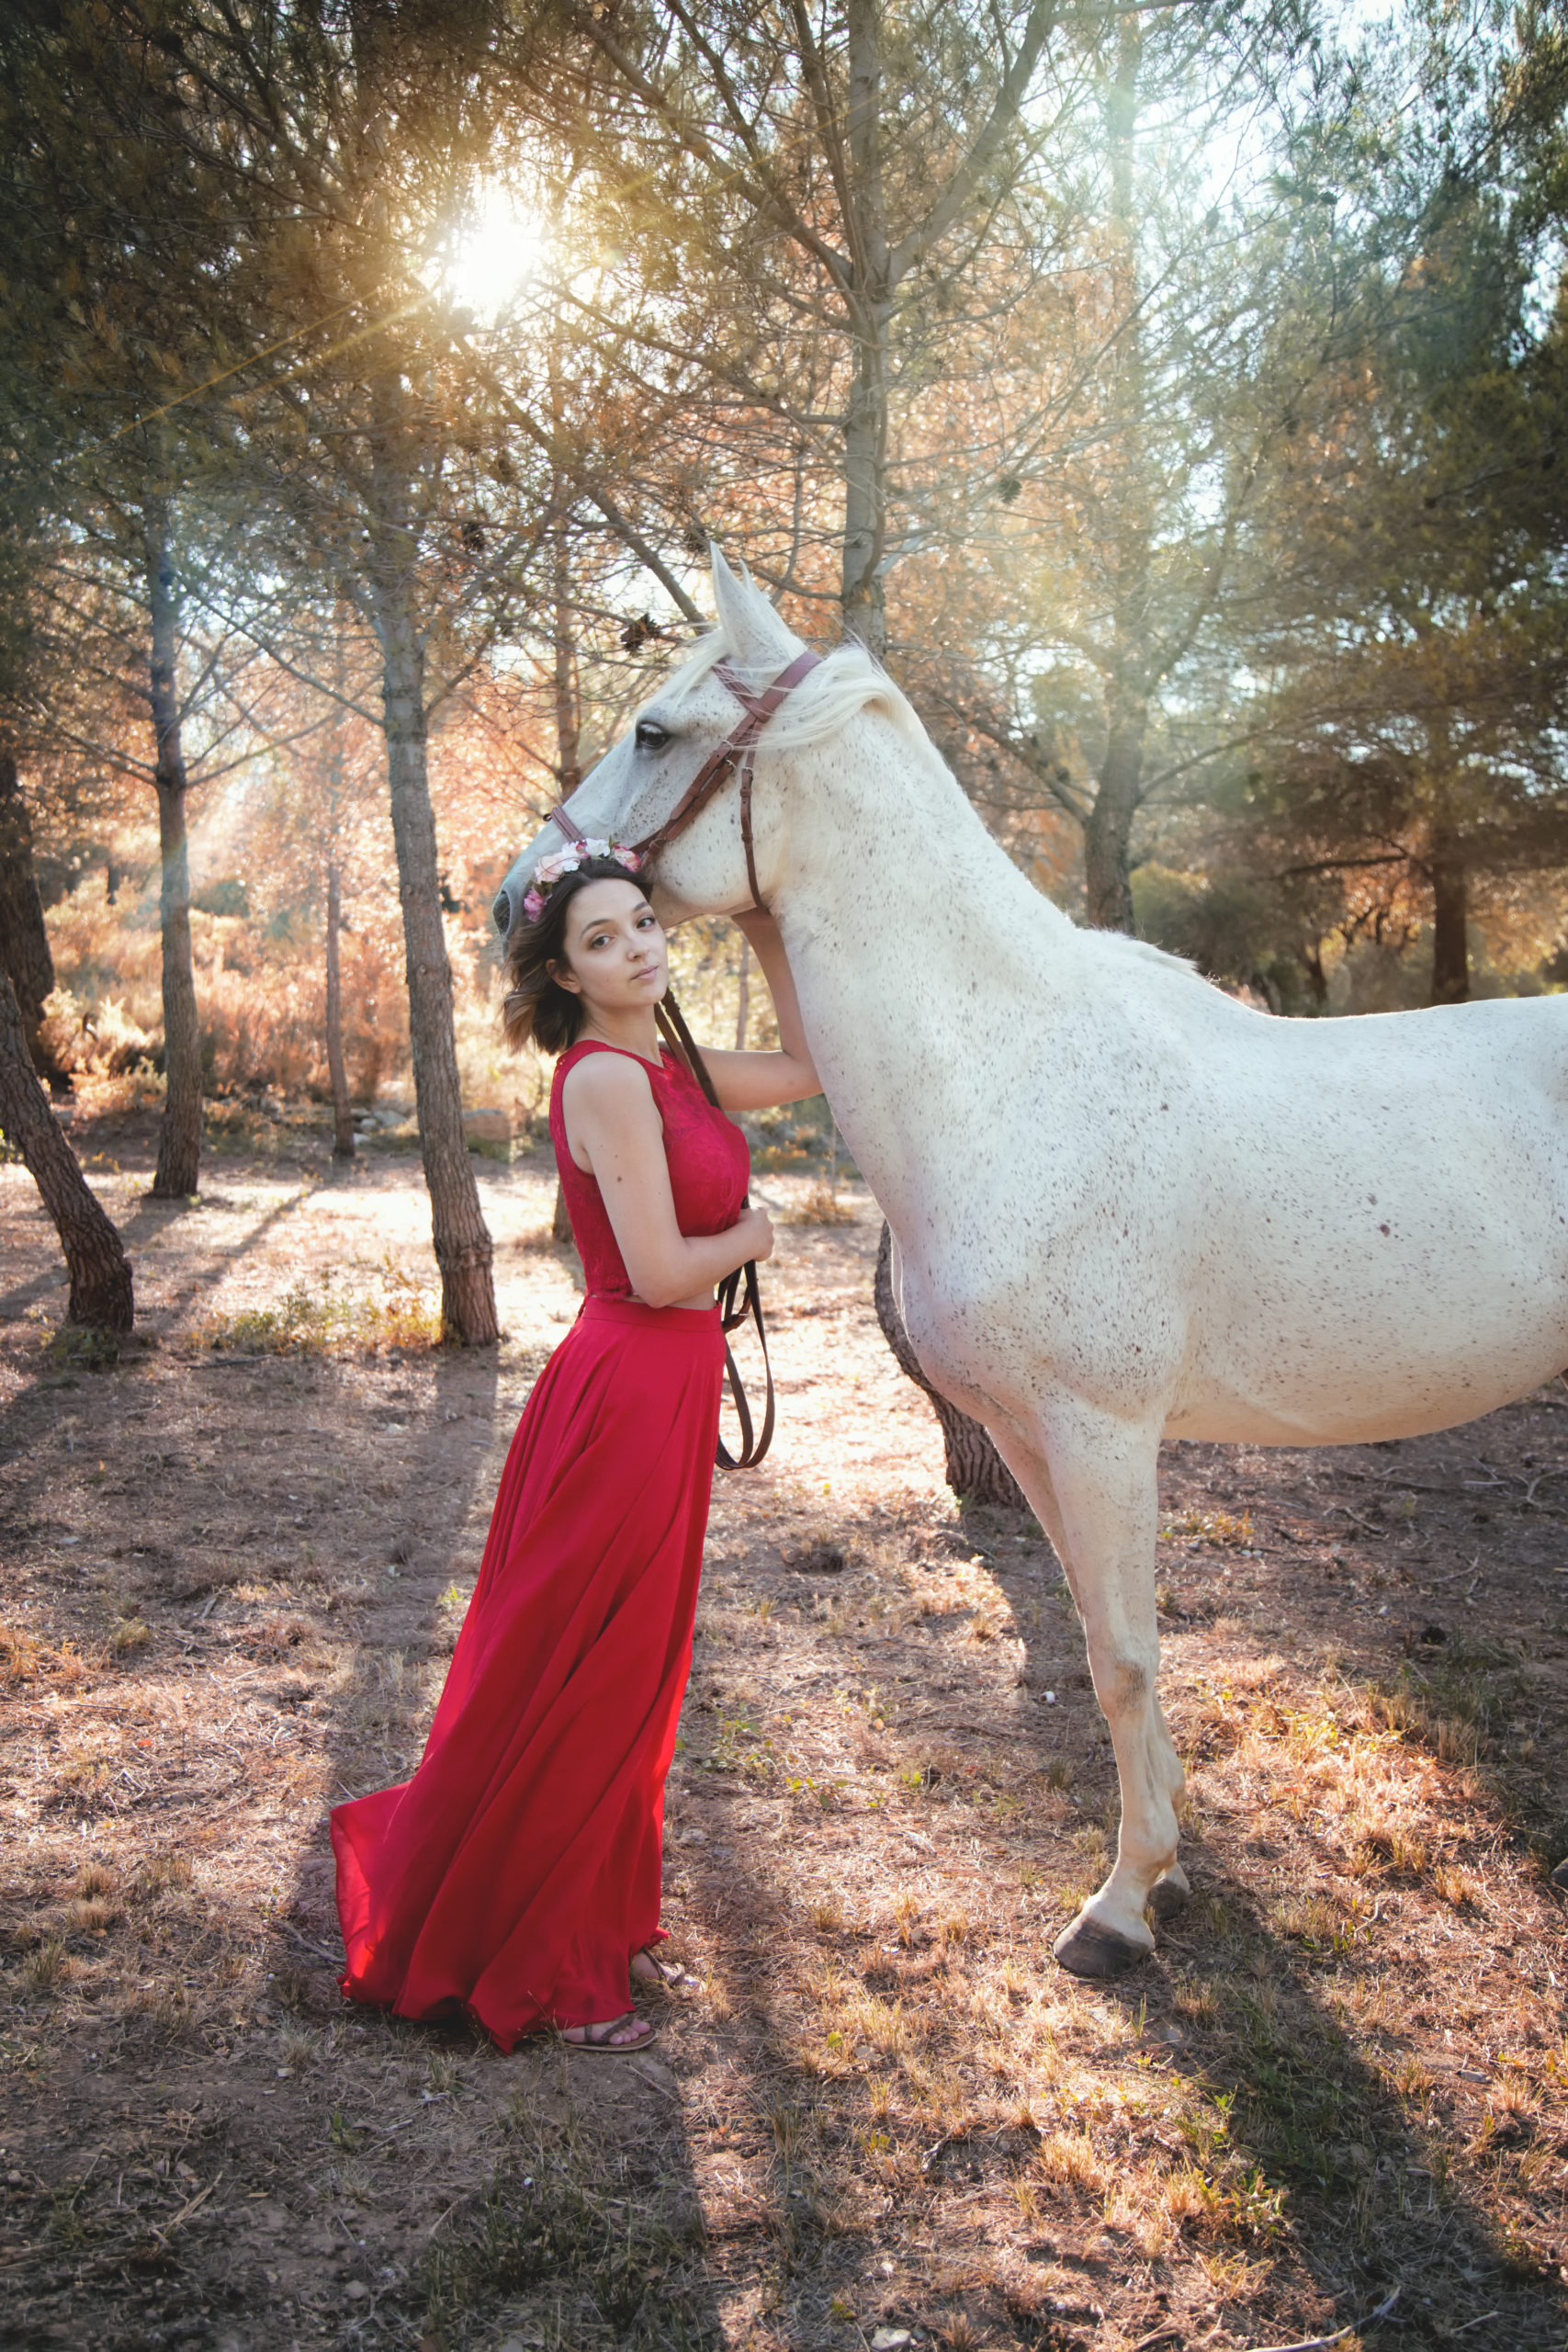 Photographe animal de compagnie, Portrait cheval jeune femme, Séance best friends